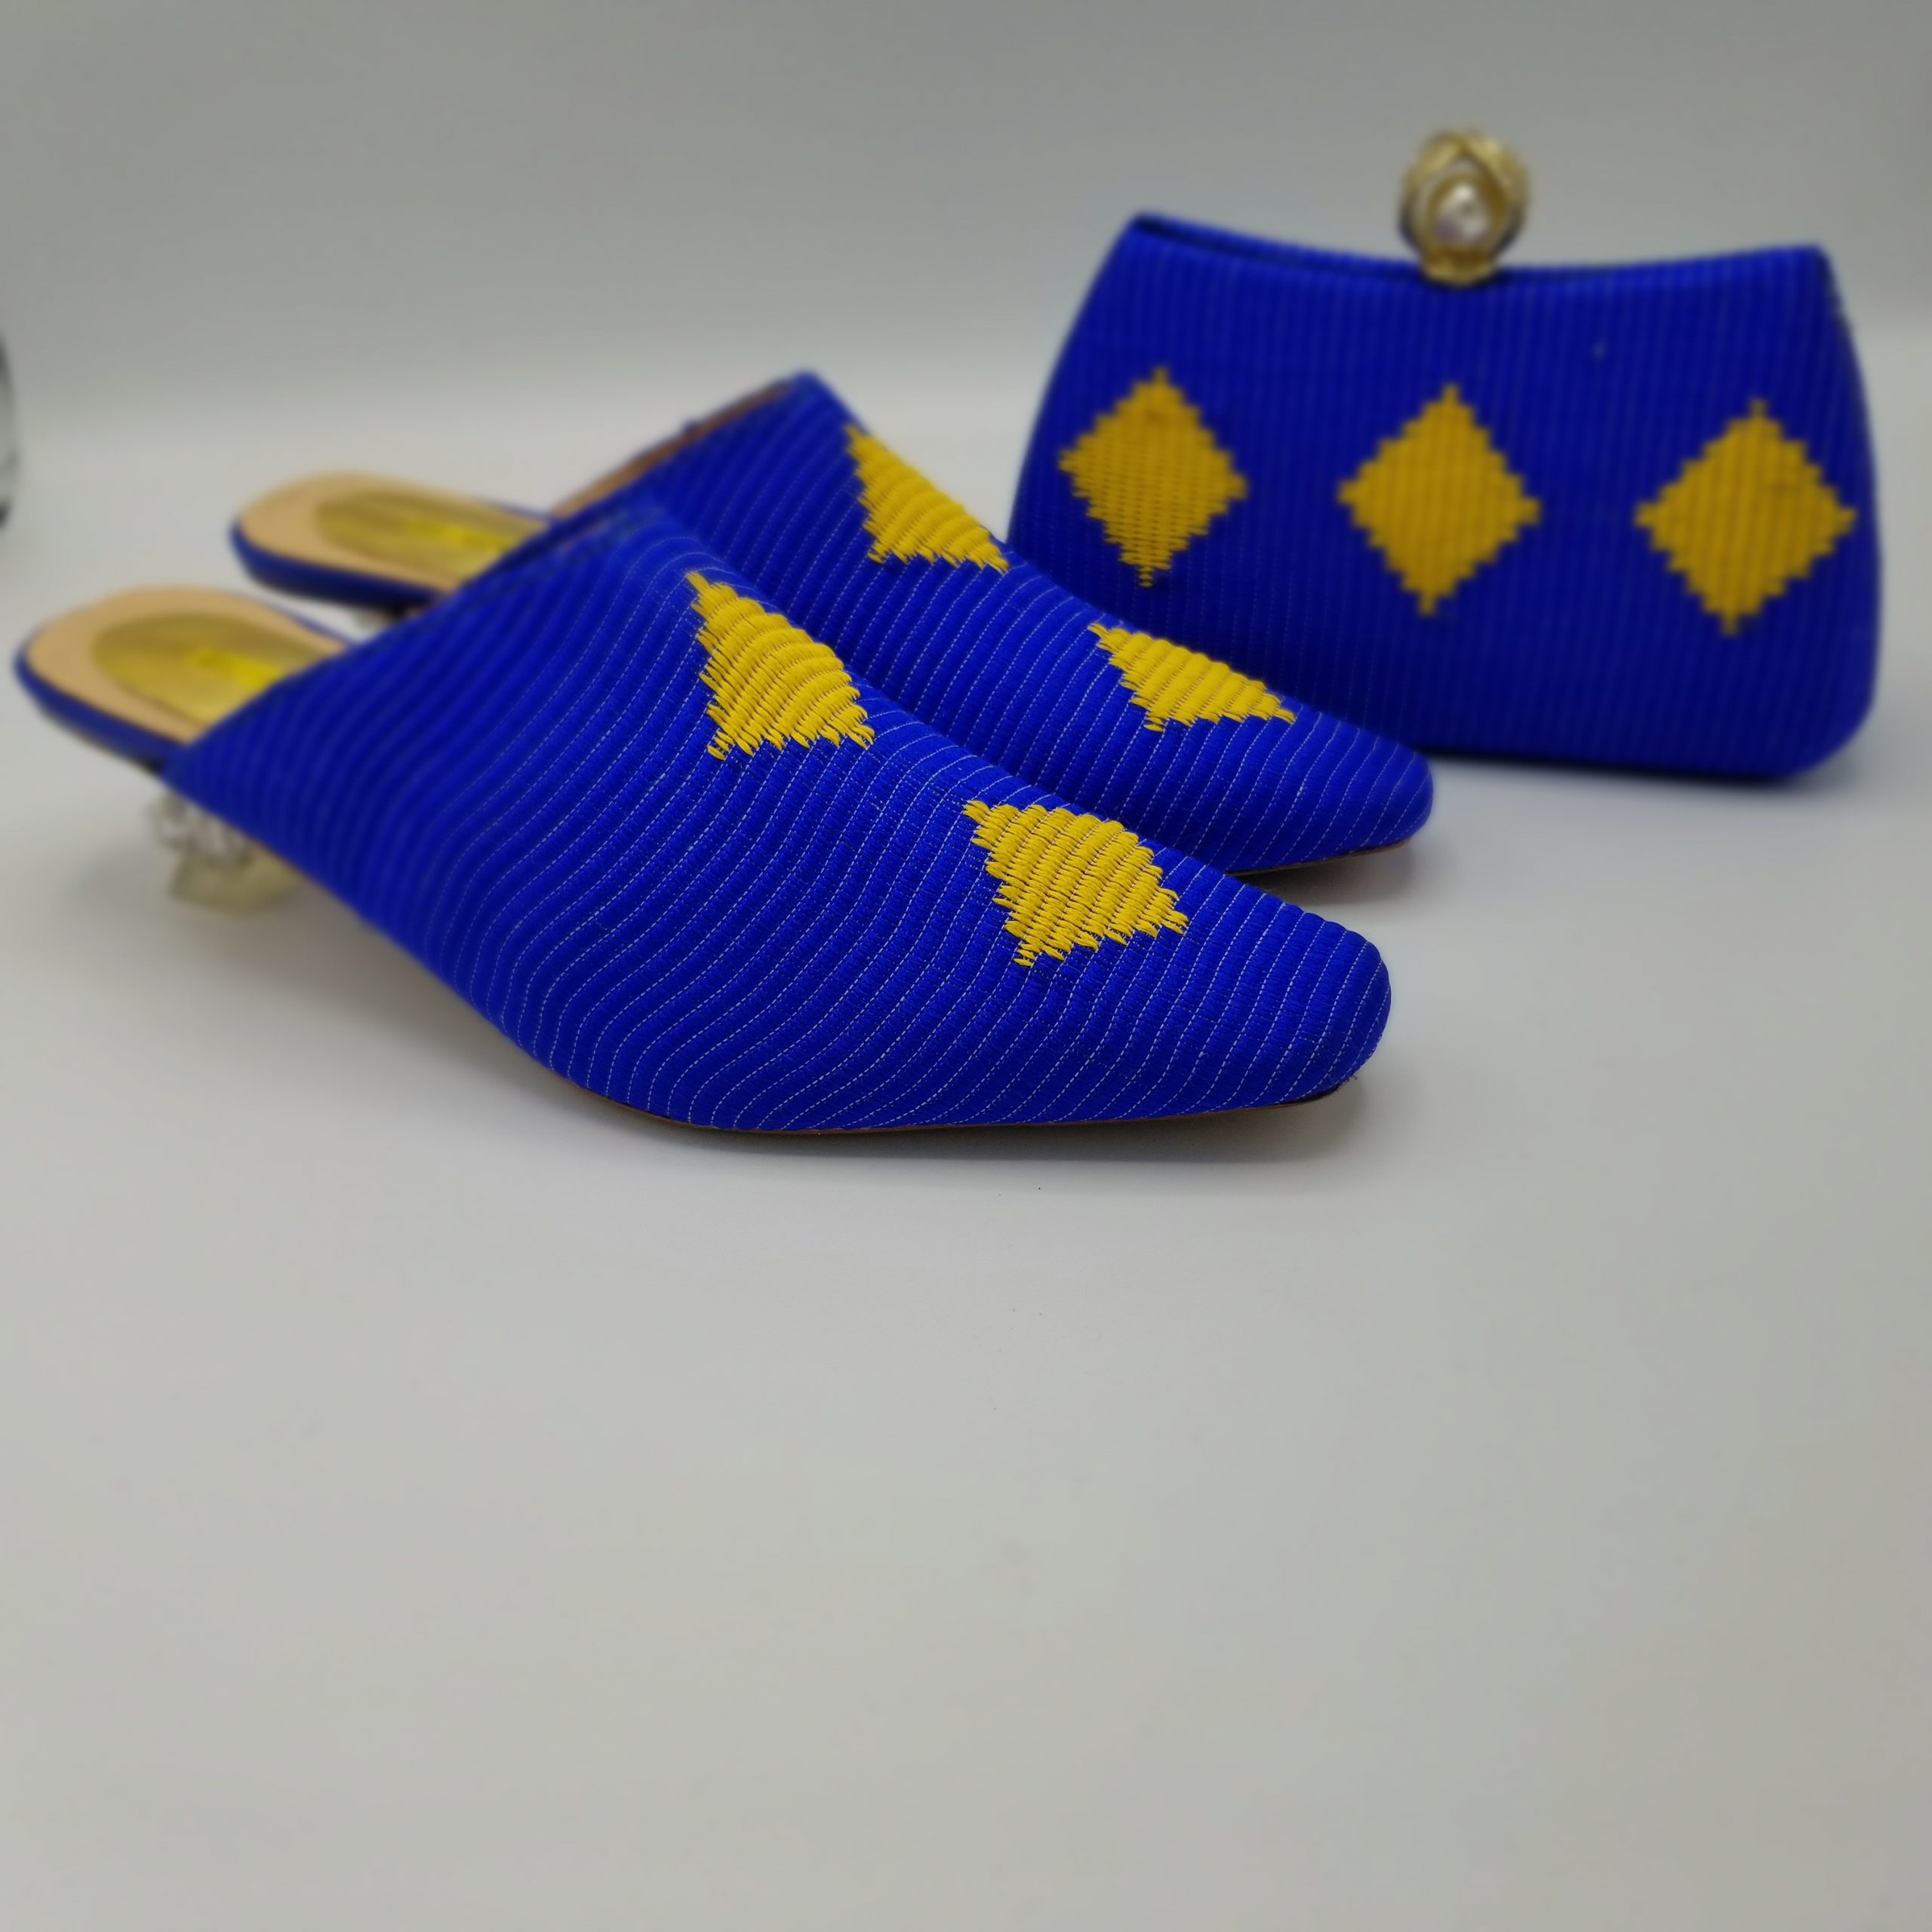 Ethiopian Culture Shoes